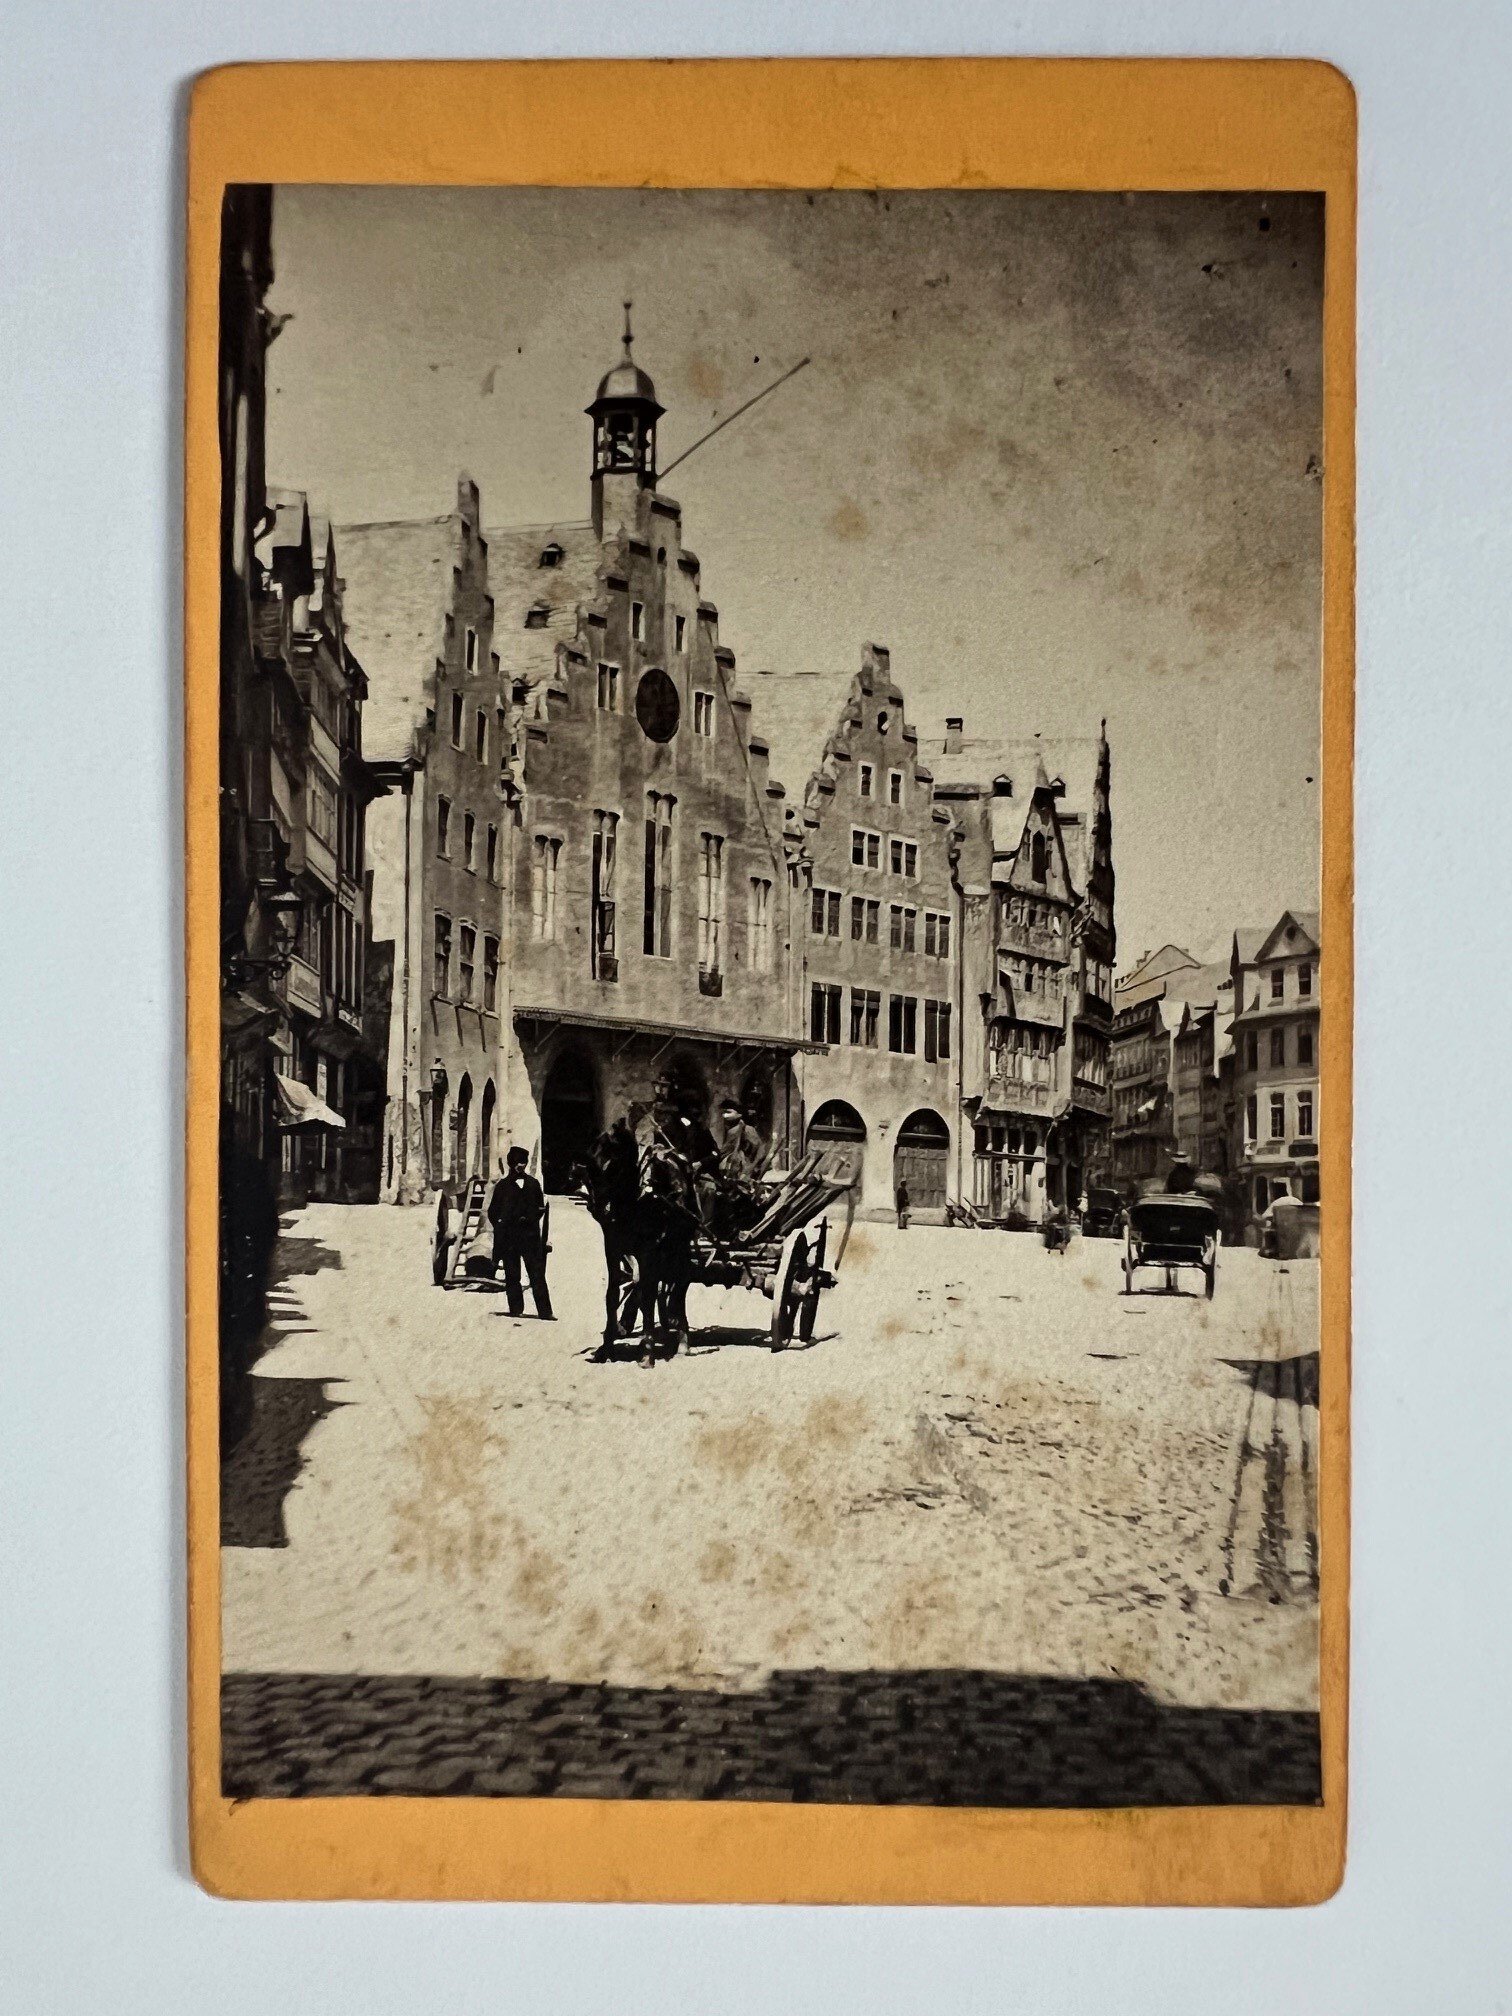 CdV, Theodor Creifelds, Frankfurt, Nr. 274, Römer in Frankfurt, klein, ca. 1872. (Taunus-Rhein-Main - Regionalgeschichtliche Sammlung Dr. Stefan Naas CC BY-NC-SA)